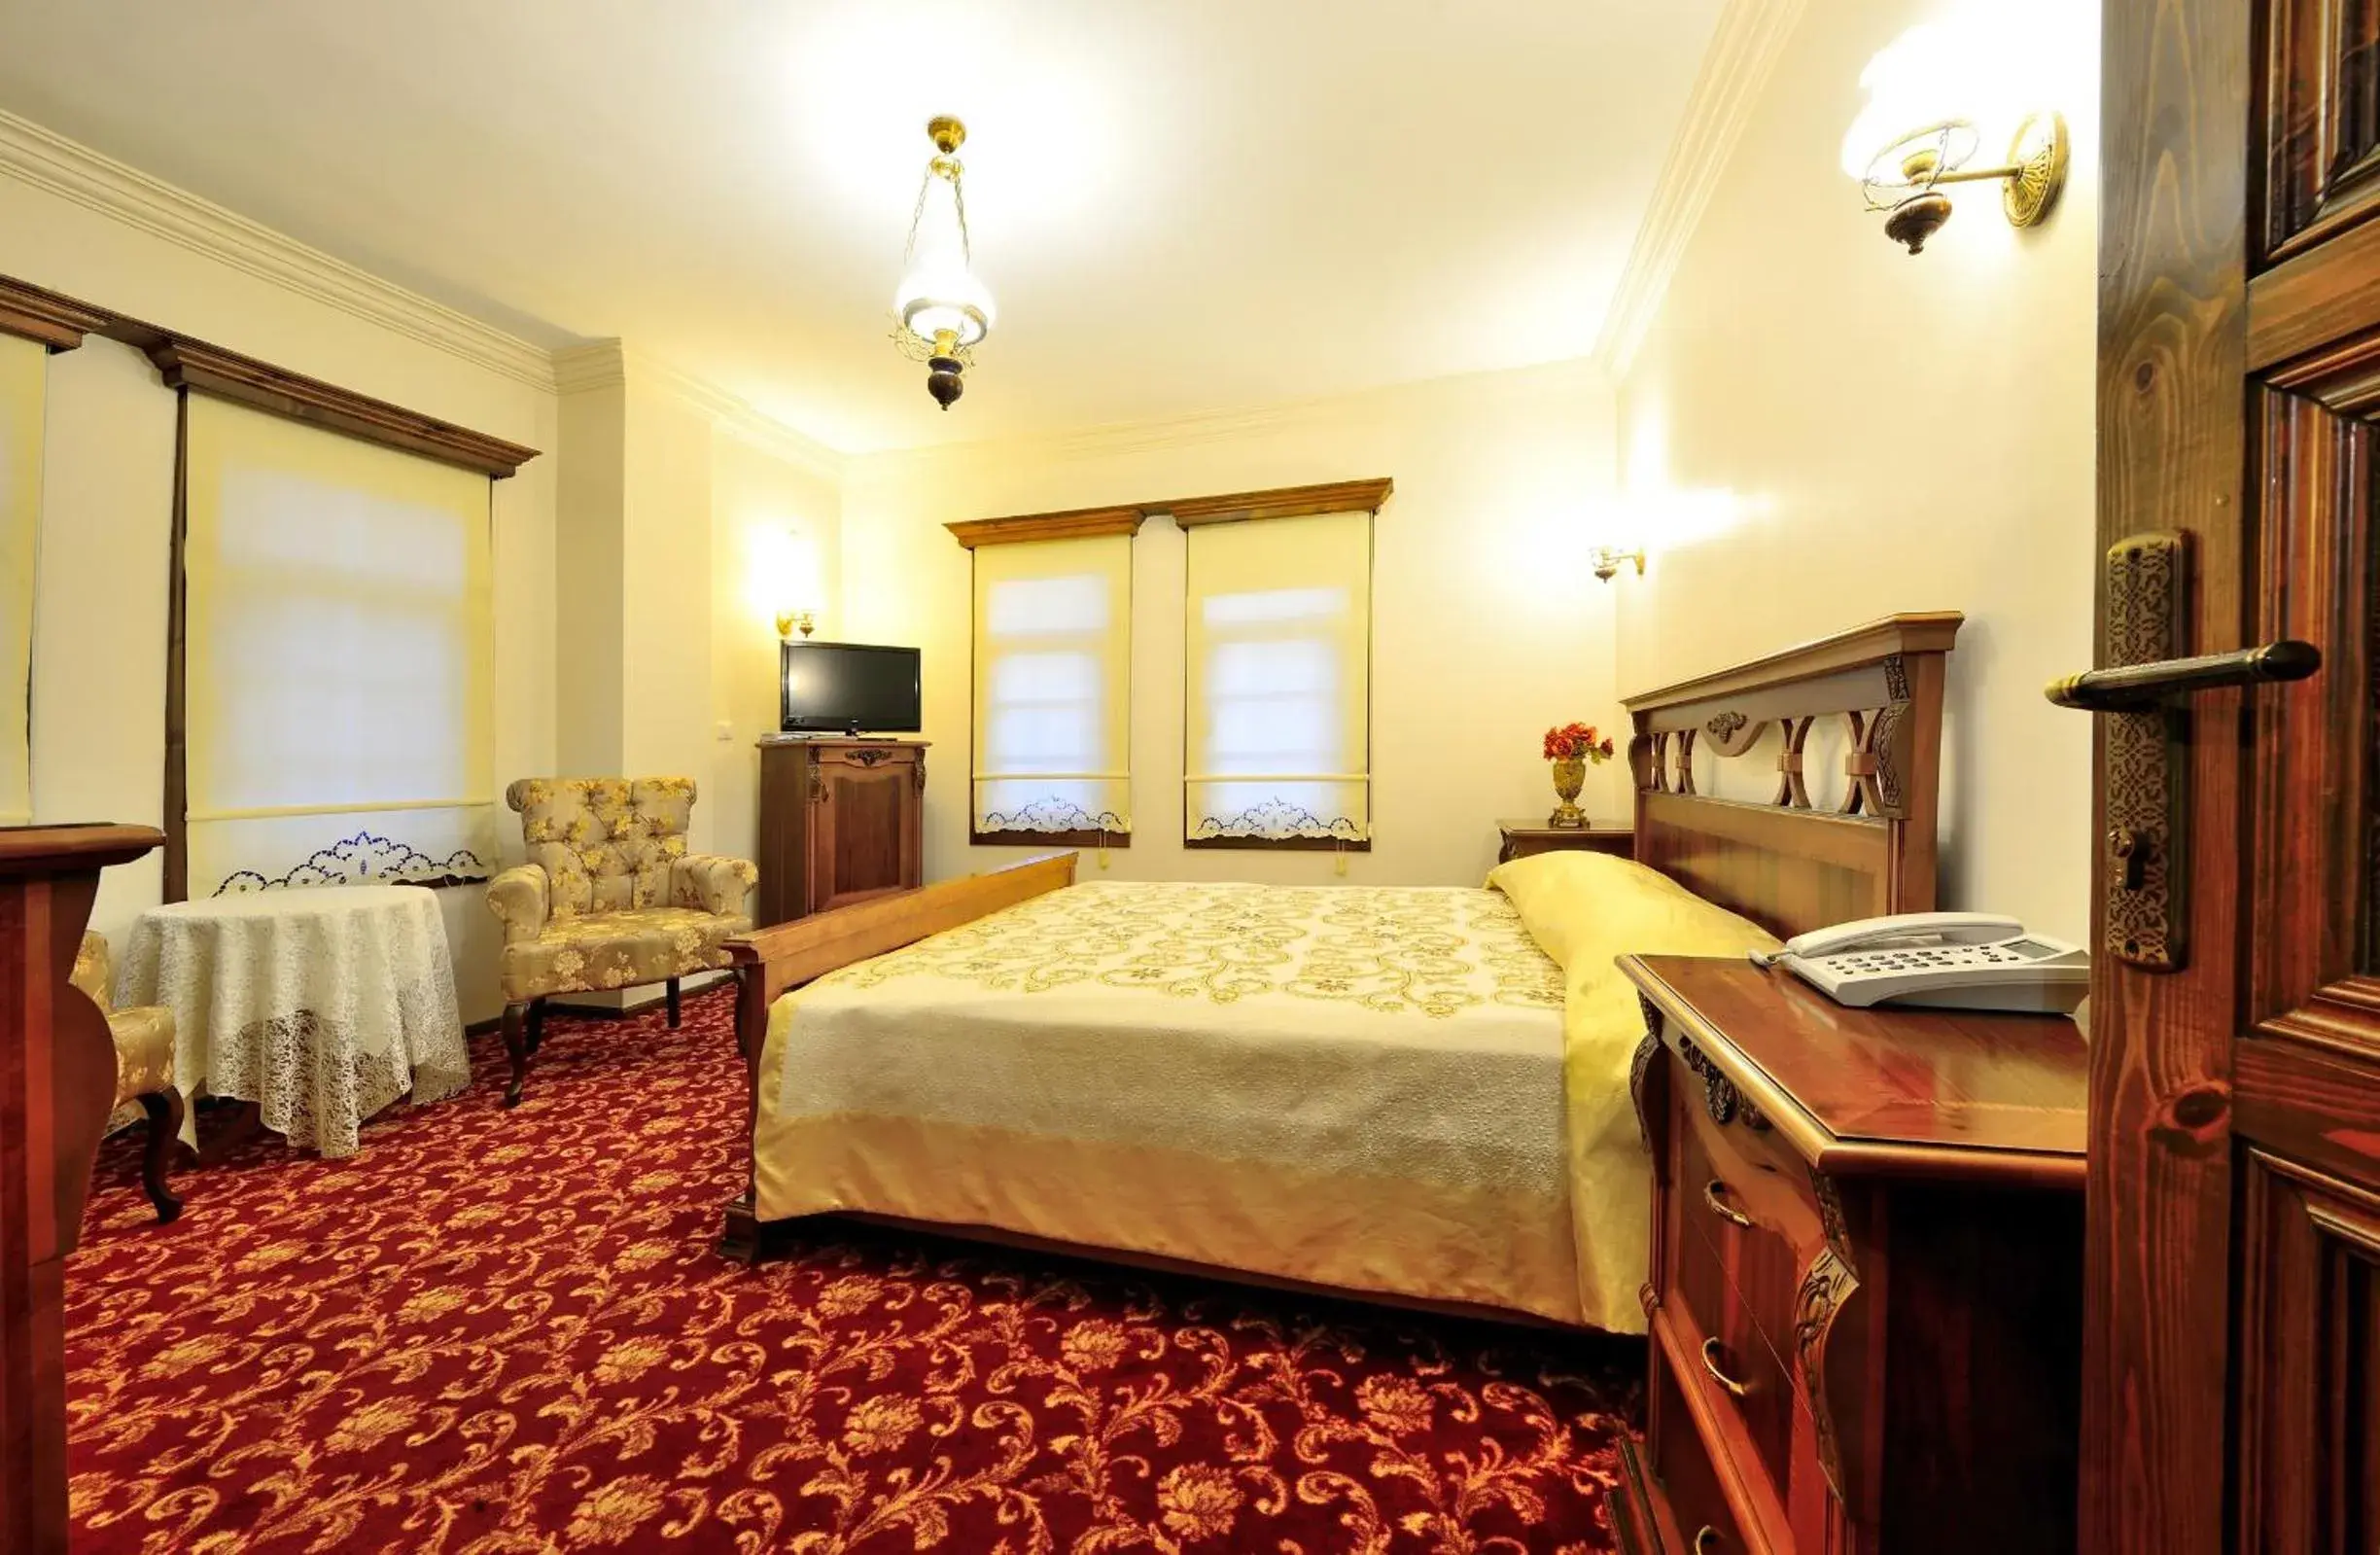 Bed, Room Photo in Baglar Saray Hotel